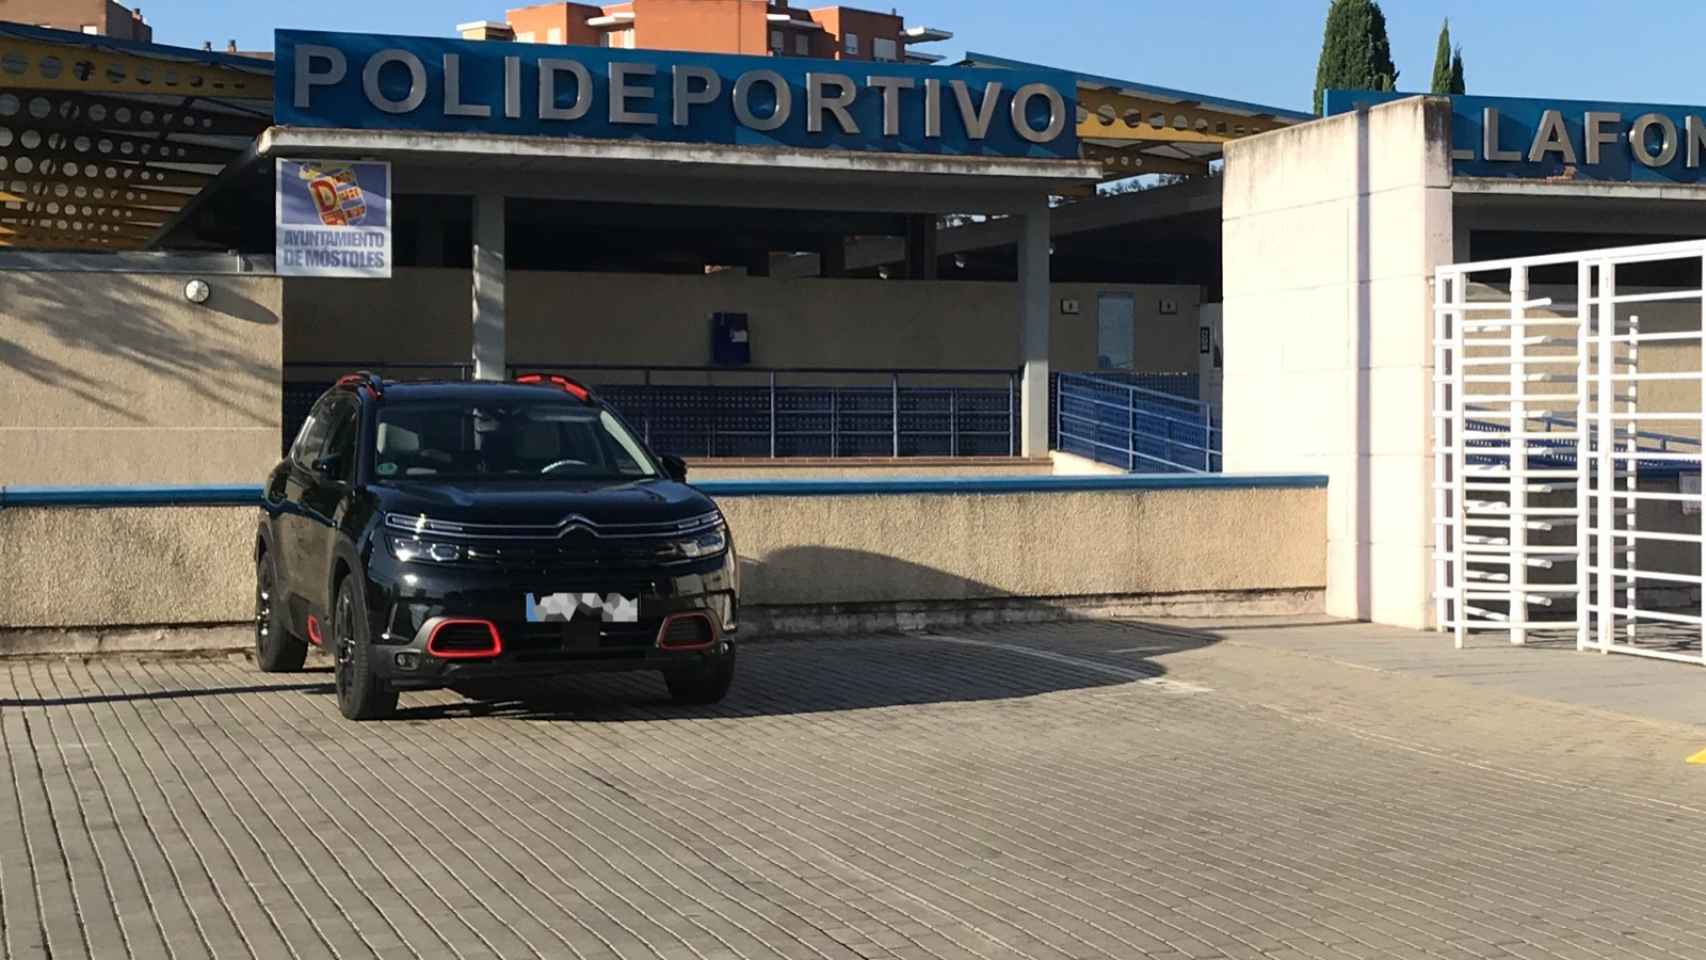 Imagen de la entrada al polideportivo situada al lado de la piscina Villafontana.